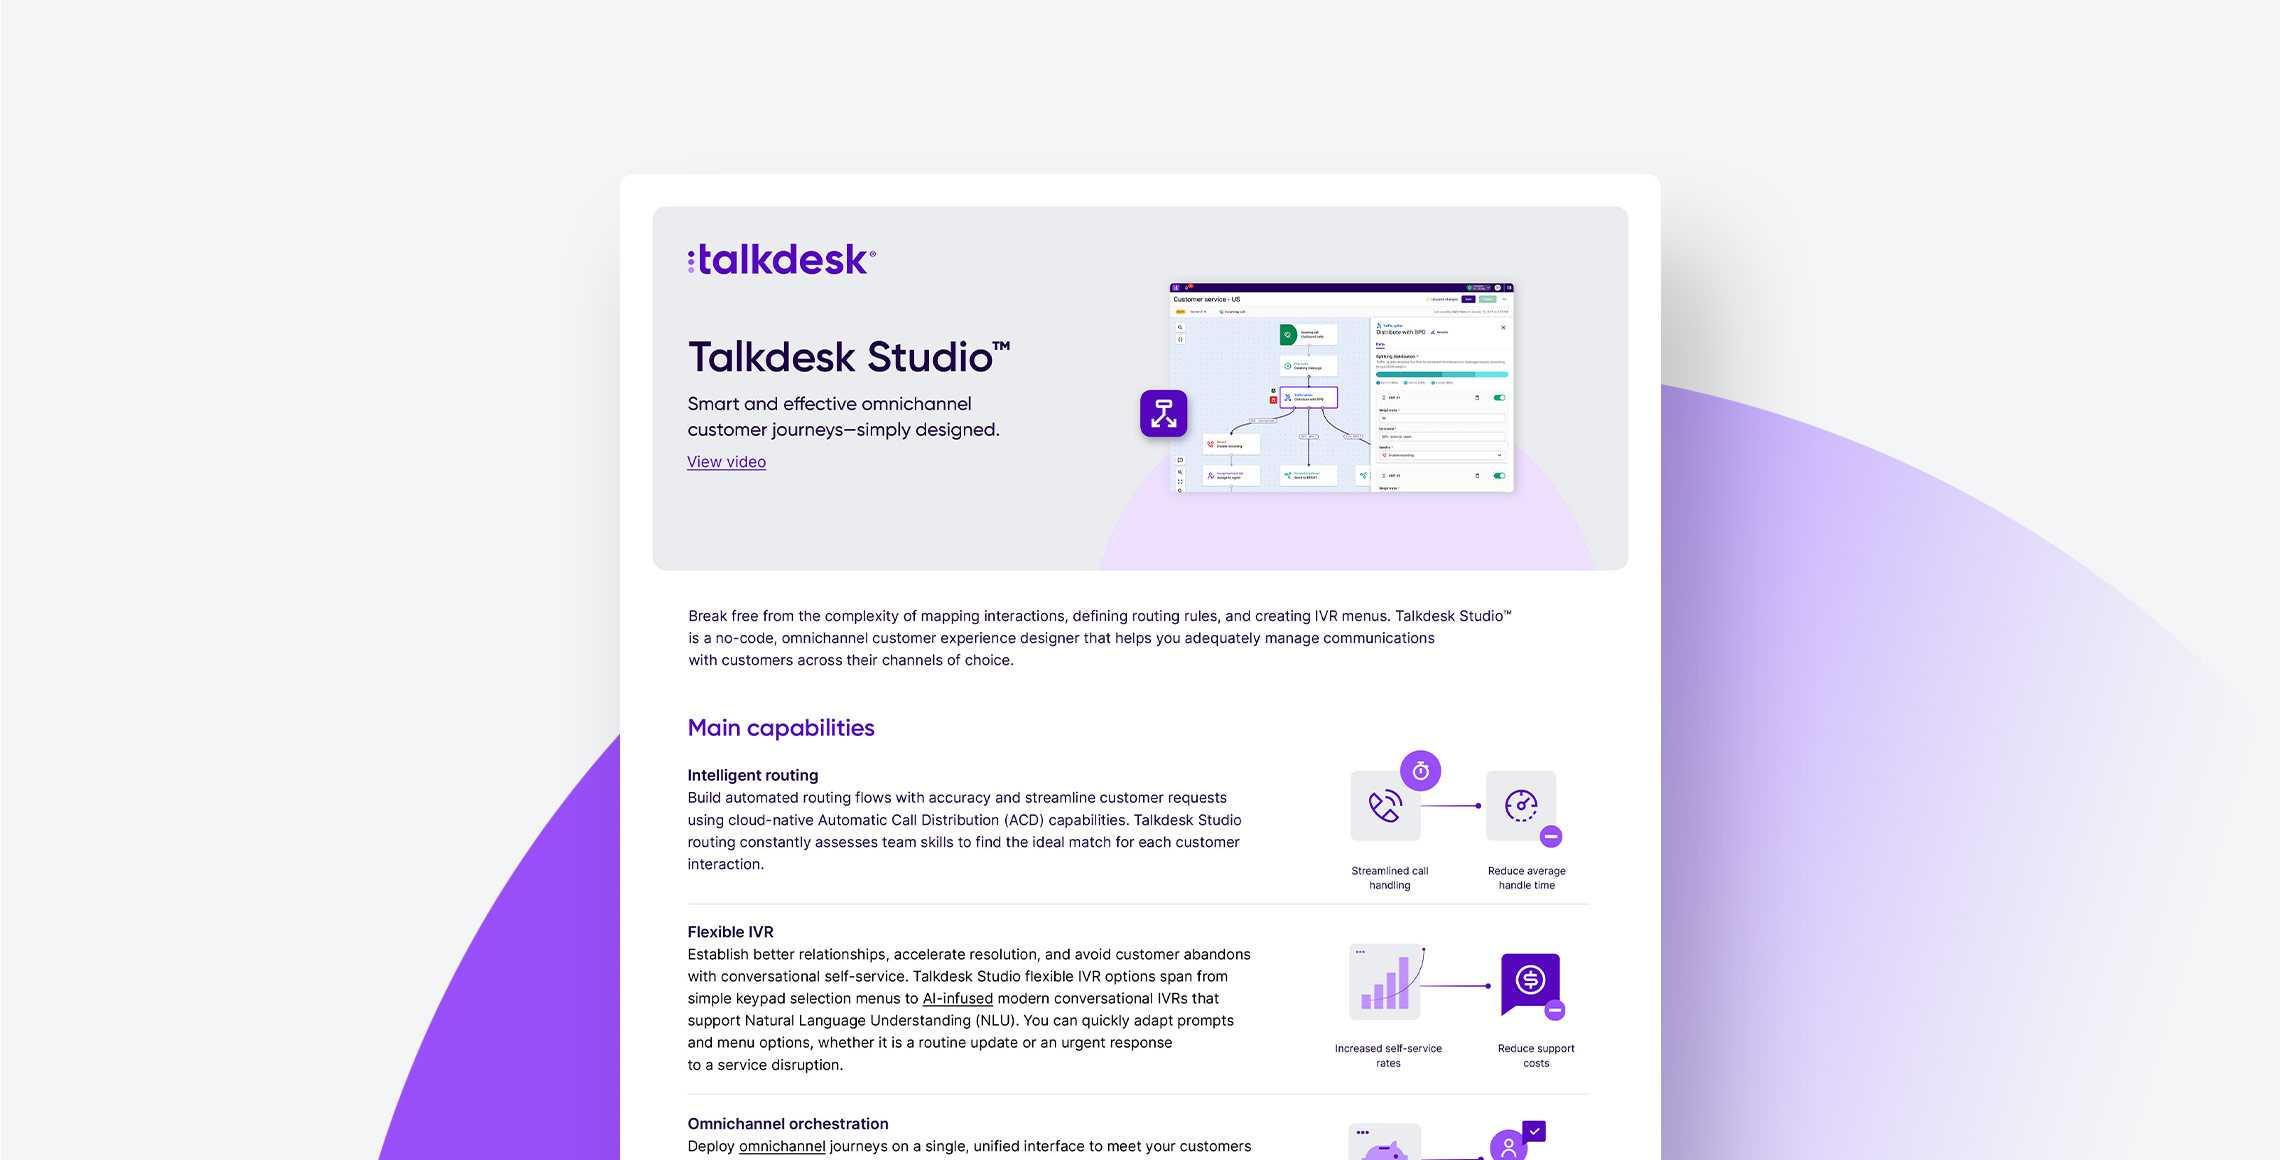 Talkdesk Studio